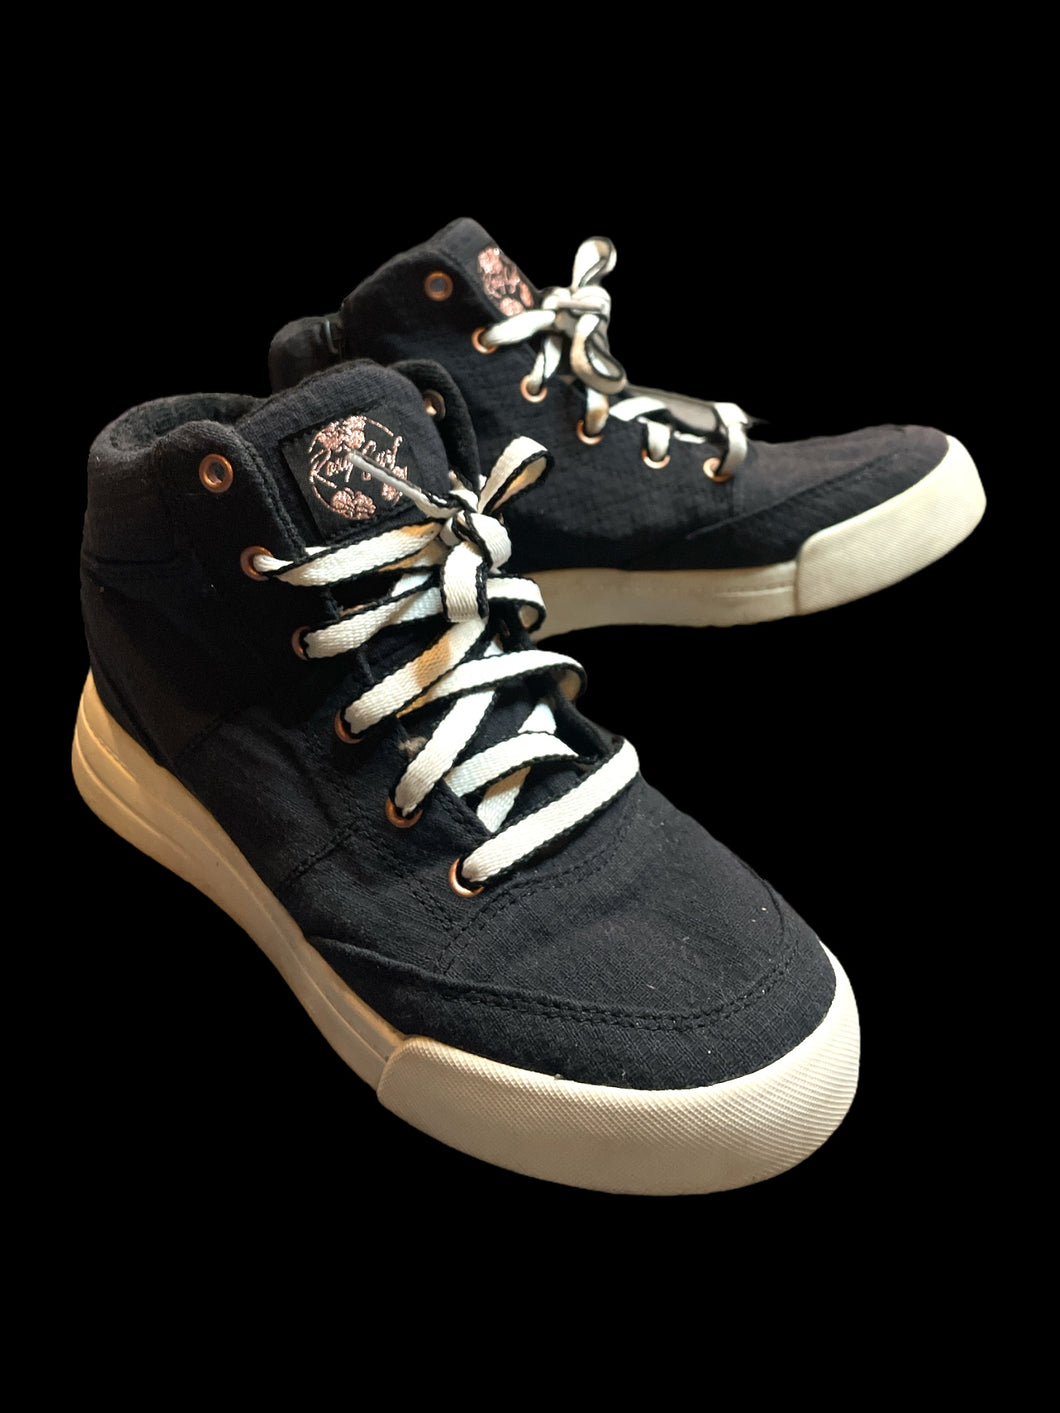 6.5W Black high top sneakers w/ black & white laces, & “Roxy Surf” logo